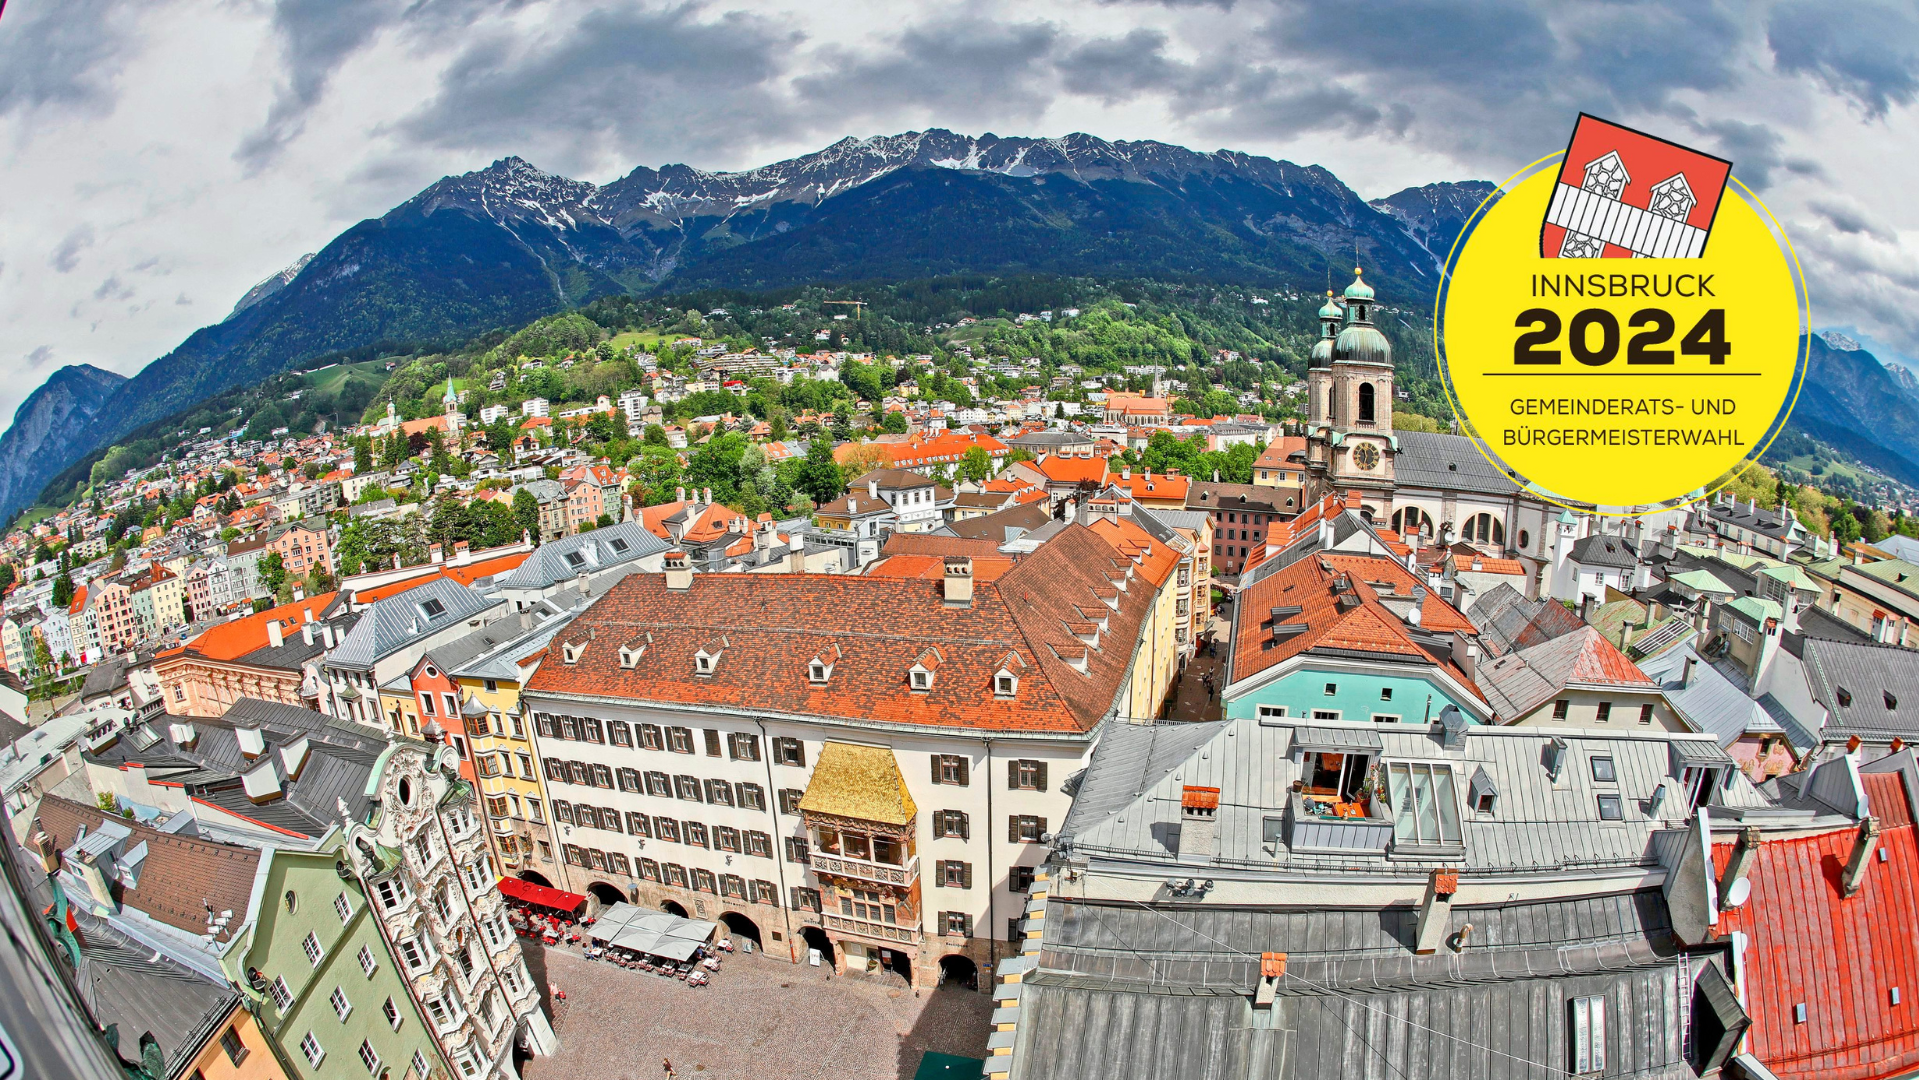 Innsbruckban ma 16 óráig lehet szavazni. Vannak meglepetések? (Bild: Christof Birbaumer)